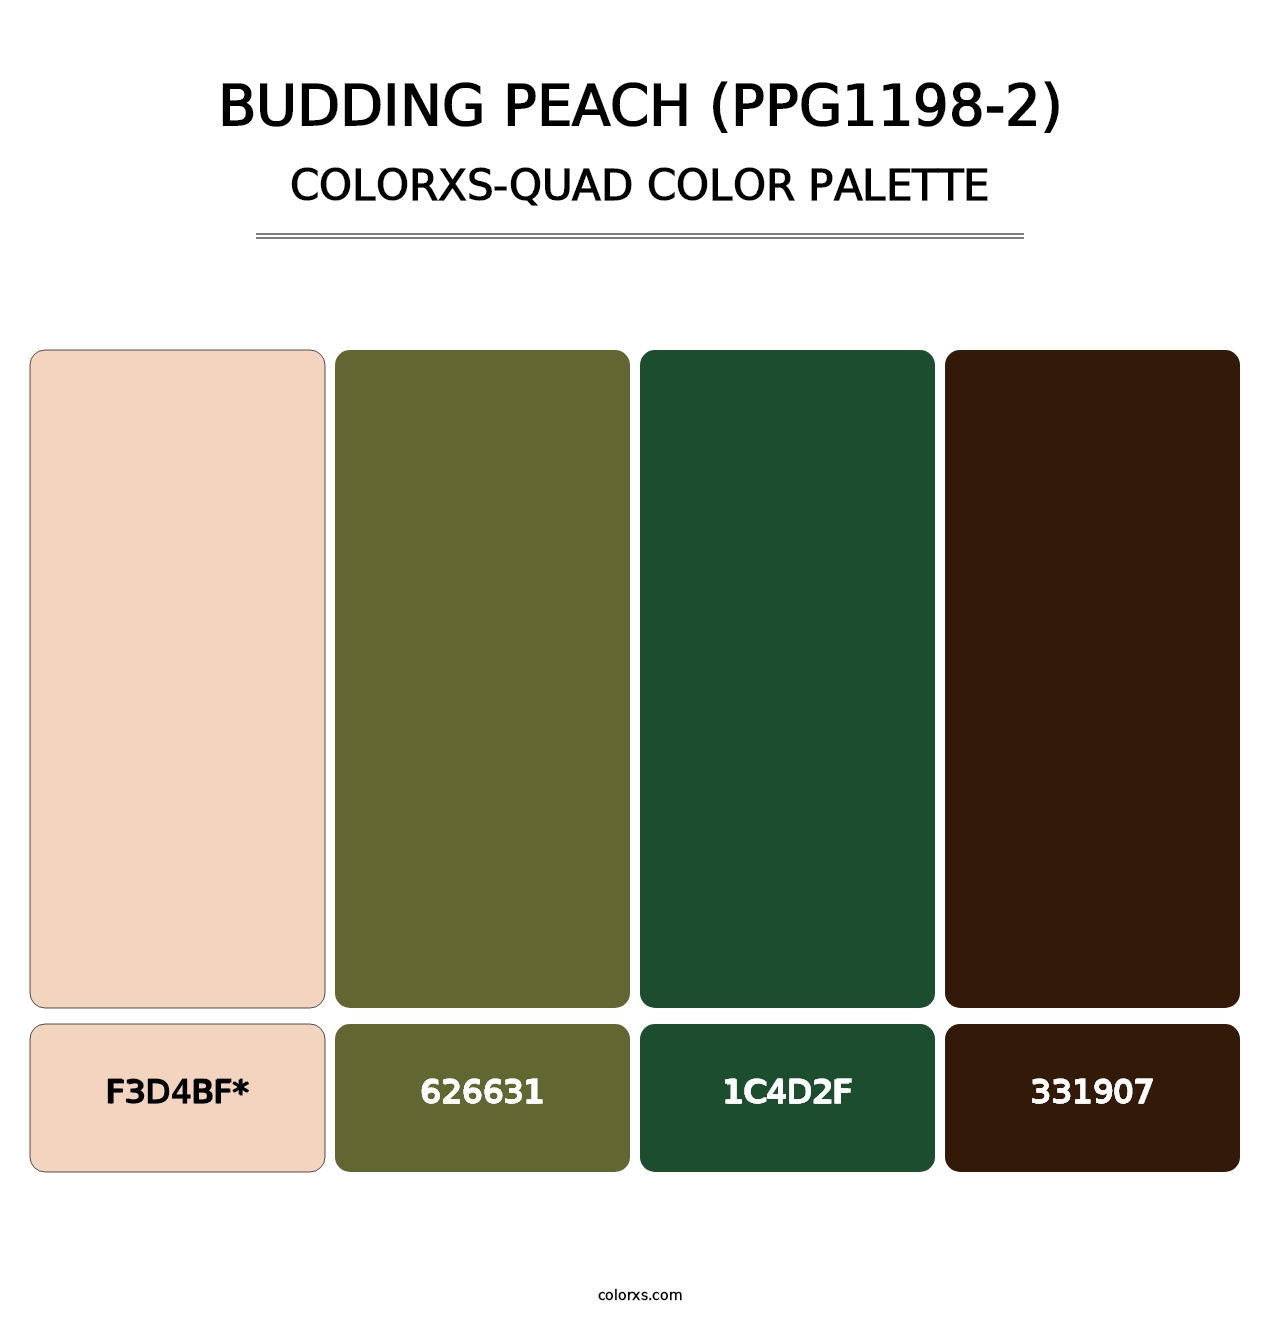 Budding Peach (PPG1198-2) - Colorxs Quad Palette